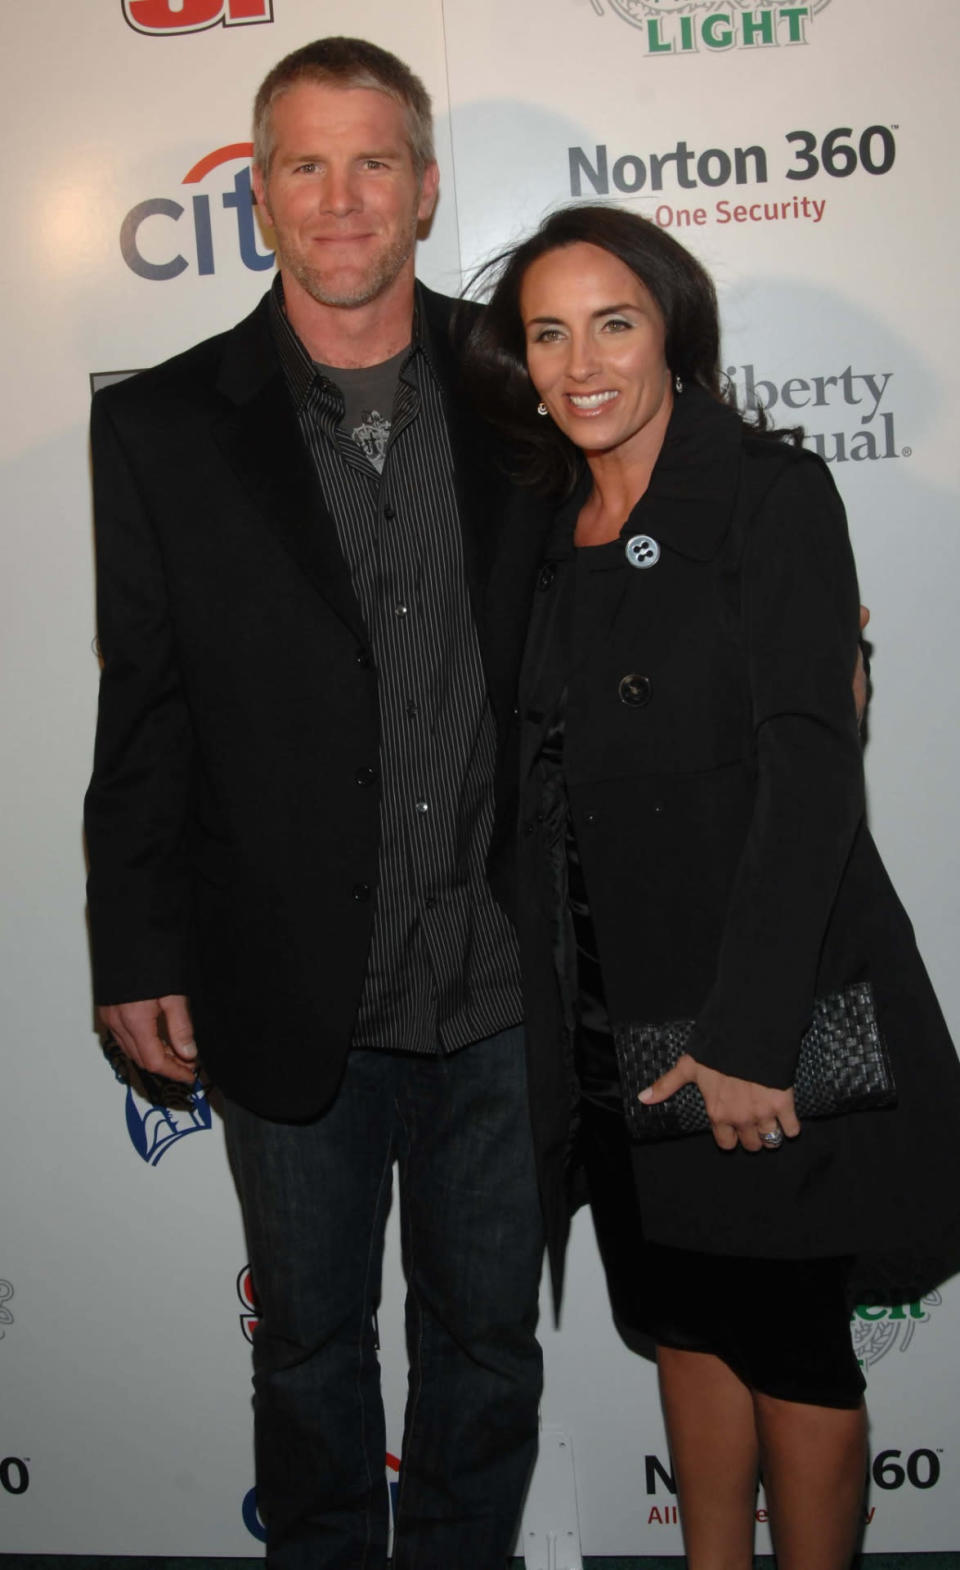 Brett Favre and wife Deanna